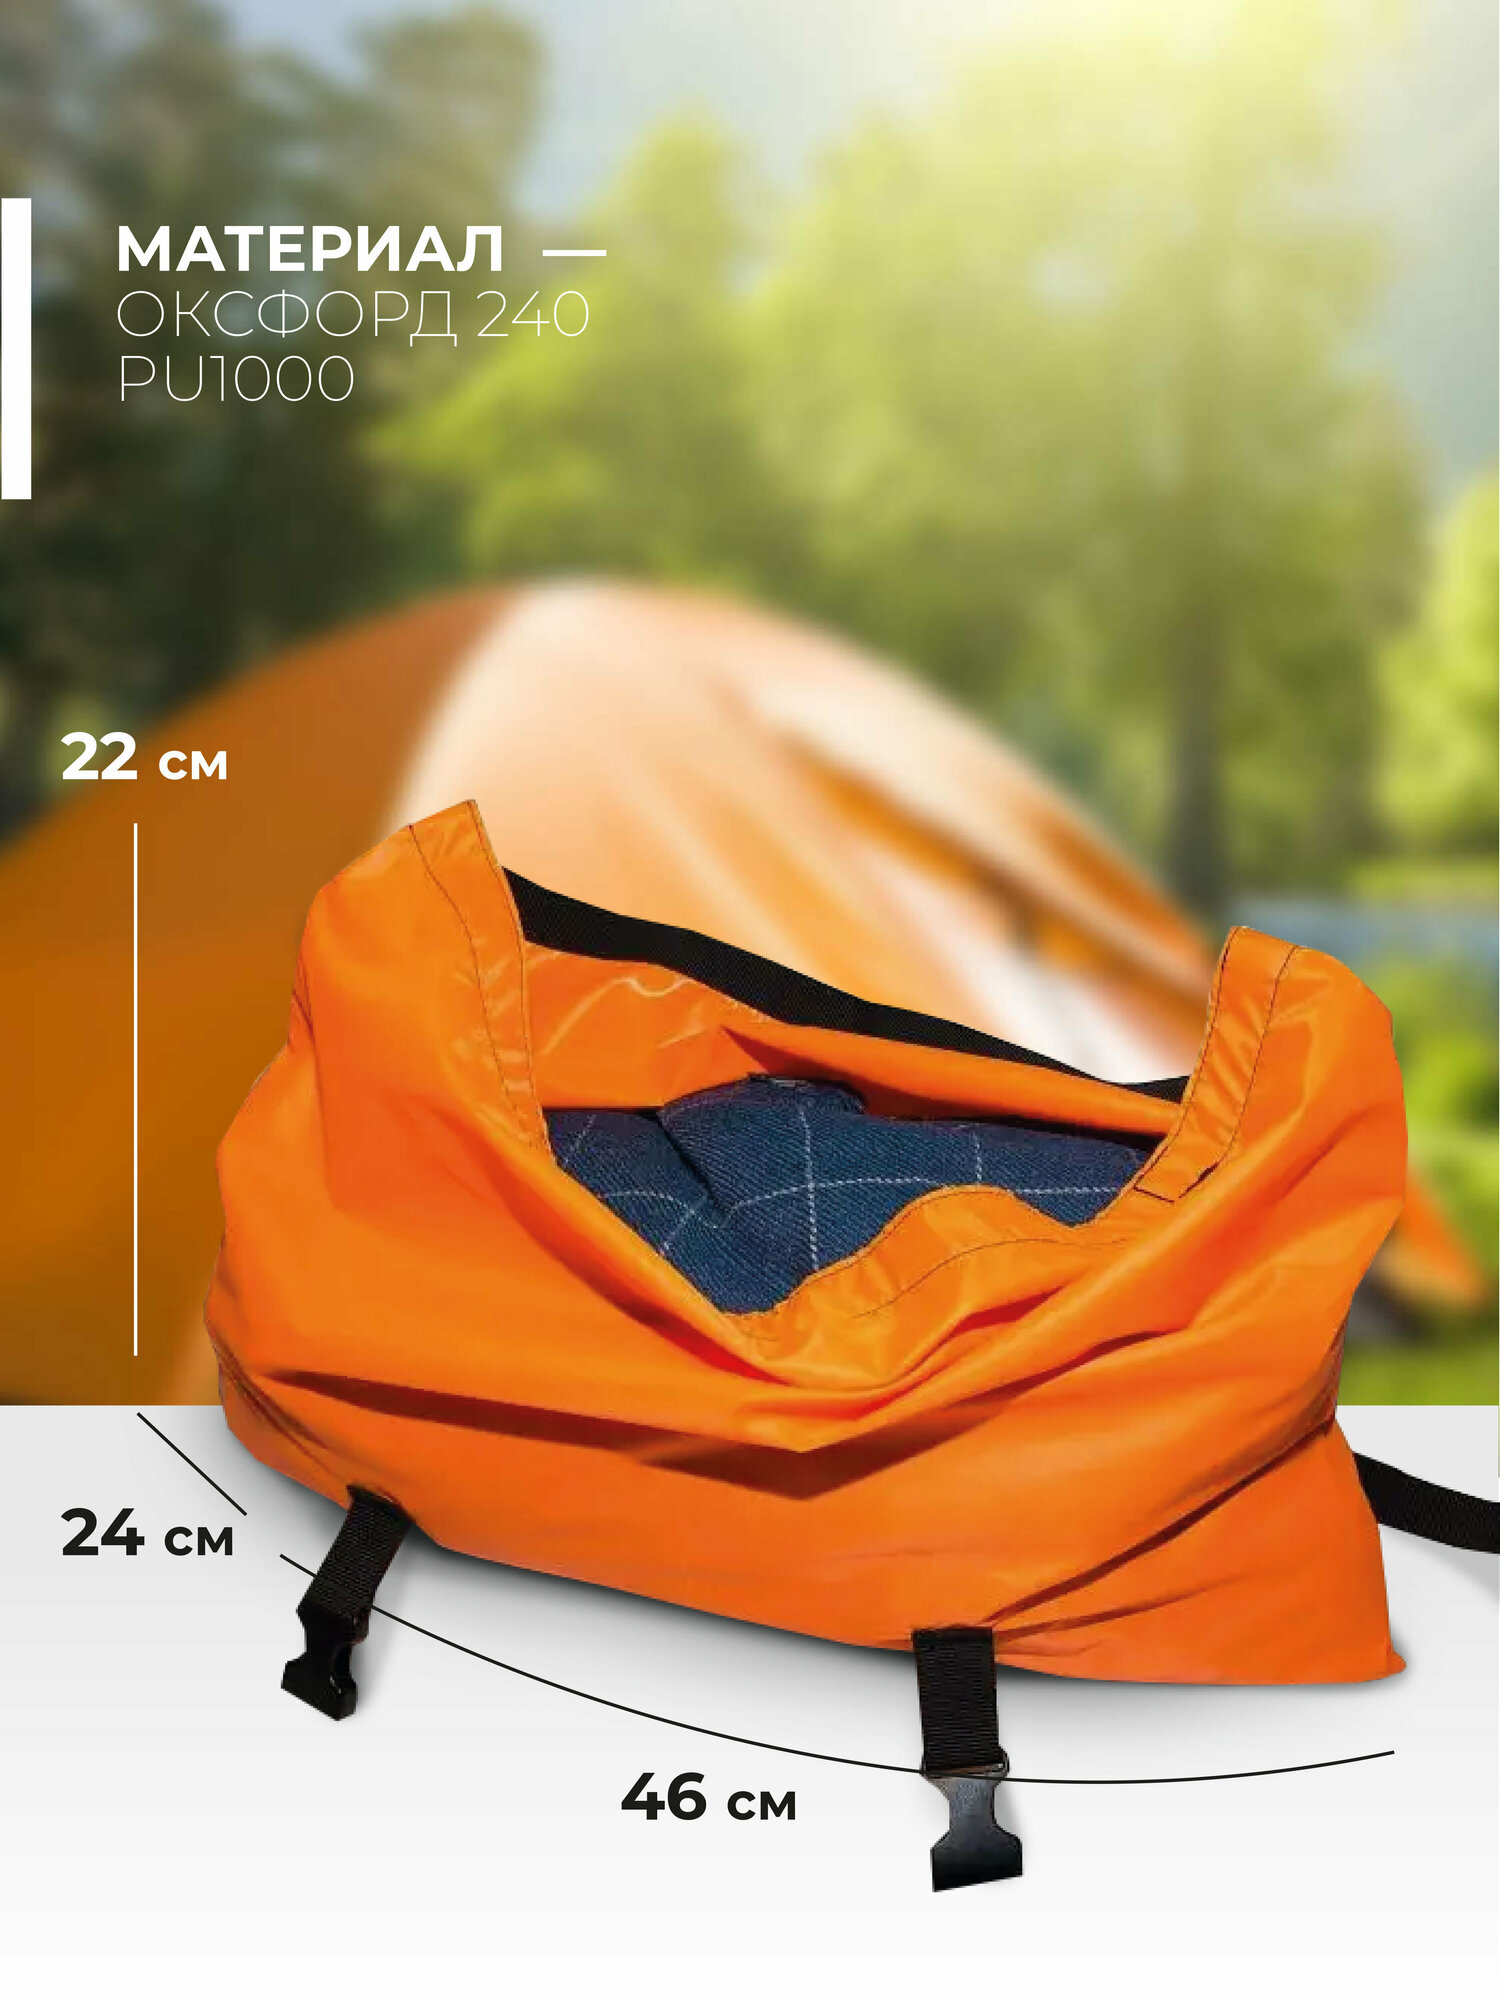 Чехол для палатки и снаряжения Две сосны оранжевый размер L 22 л